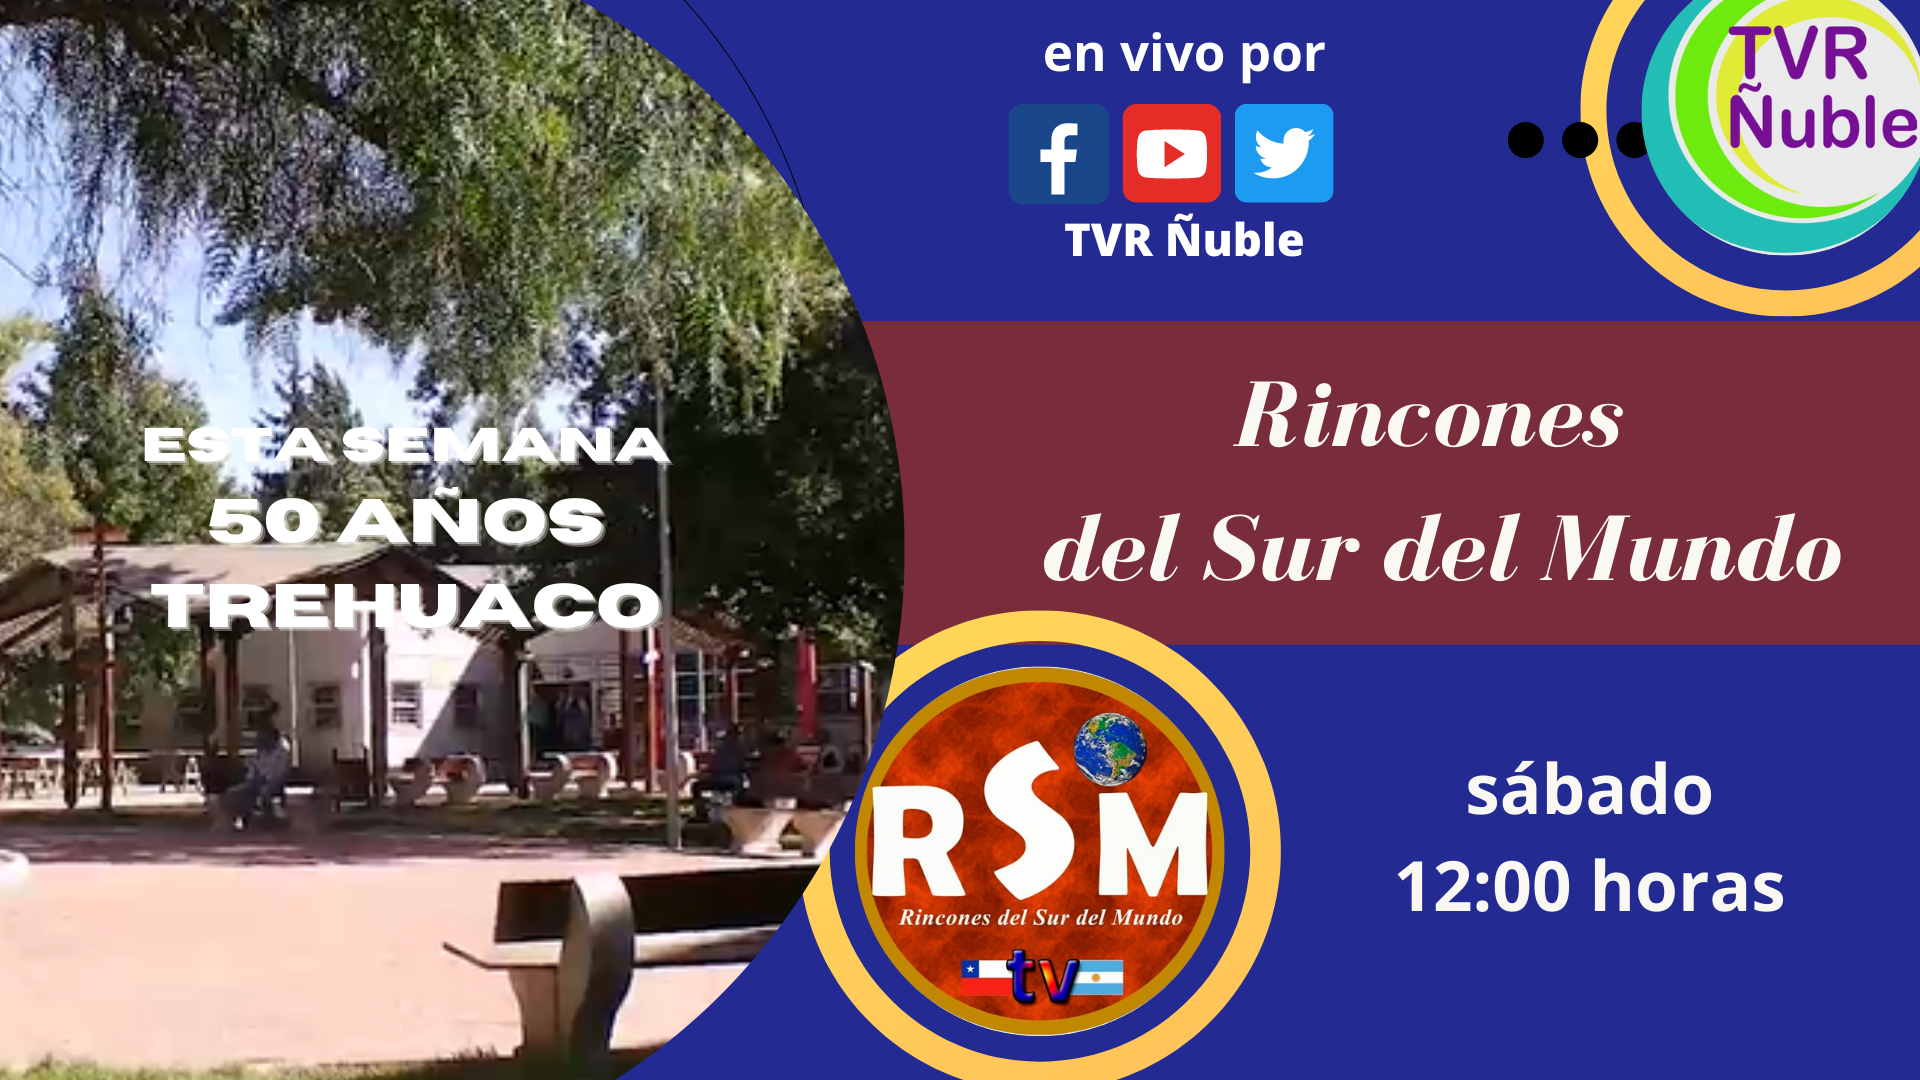 RINCONES DEL SUR DEL MUNDO «50 años Trehuaco»